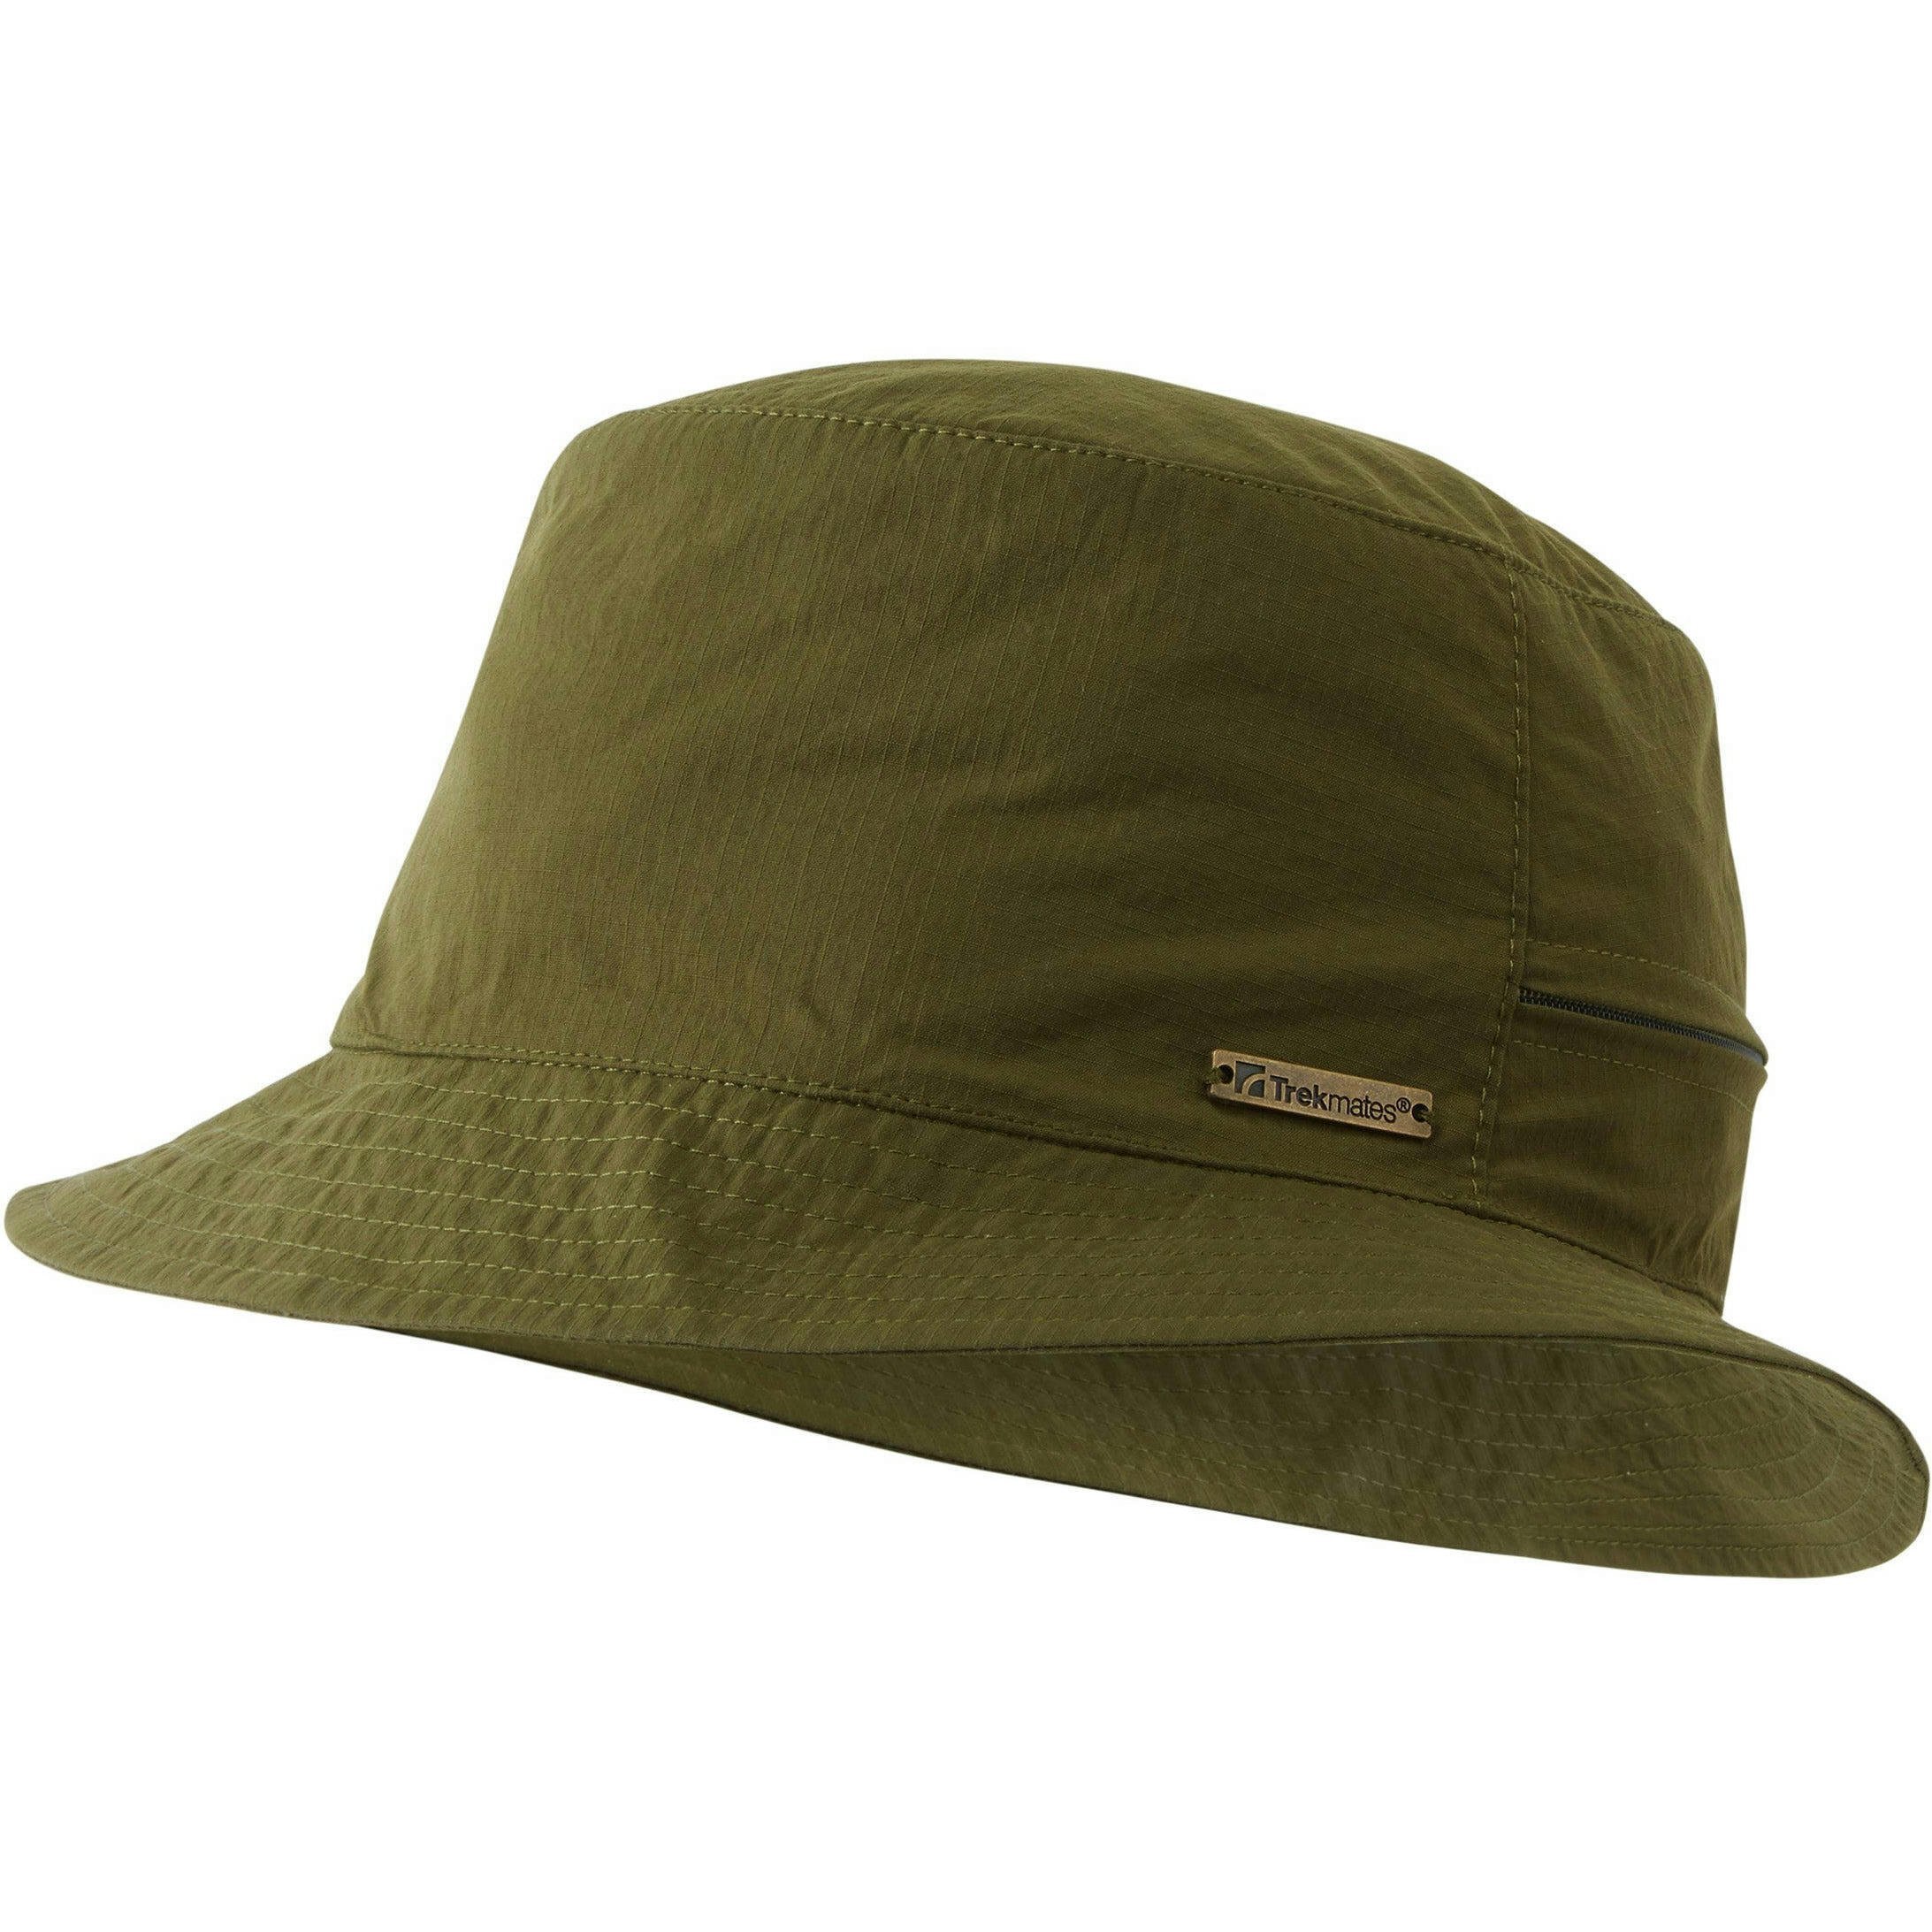 Панама Trekmates Mojave Hat TM-006289 dark olive - S/M - зеленый фото 1